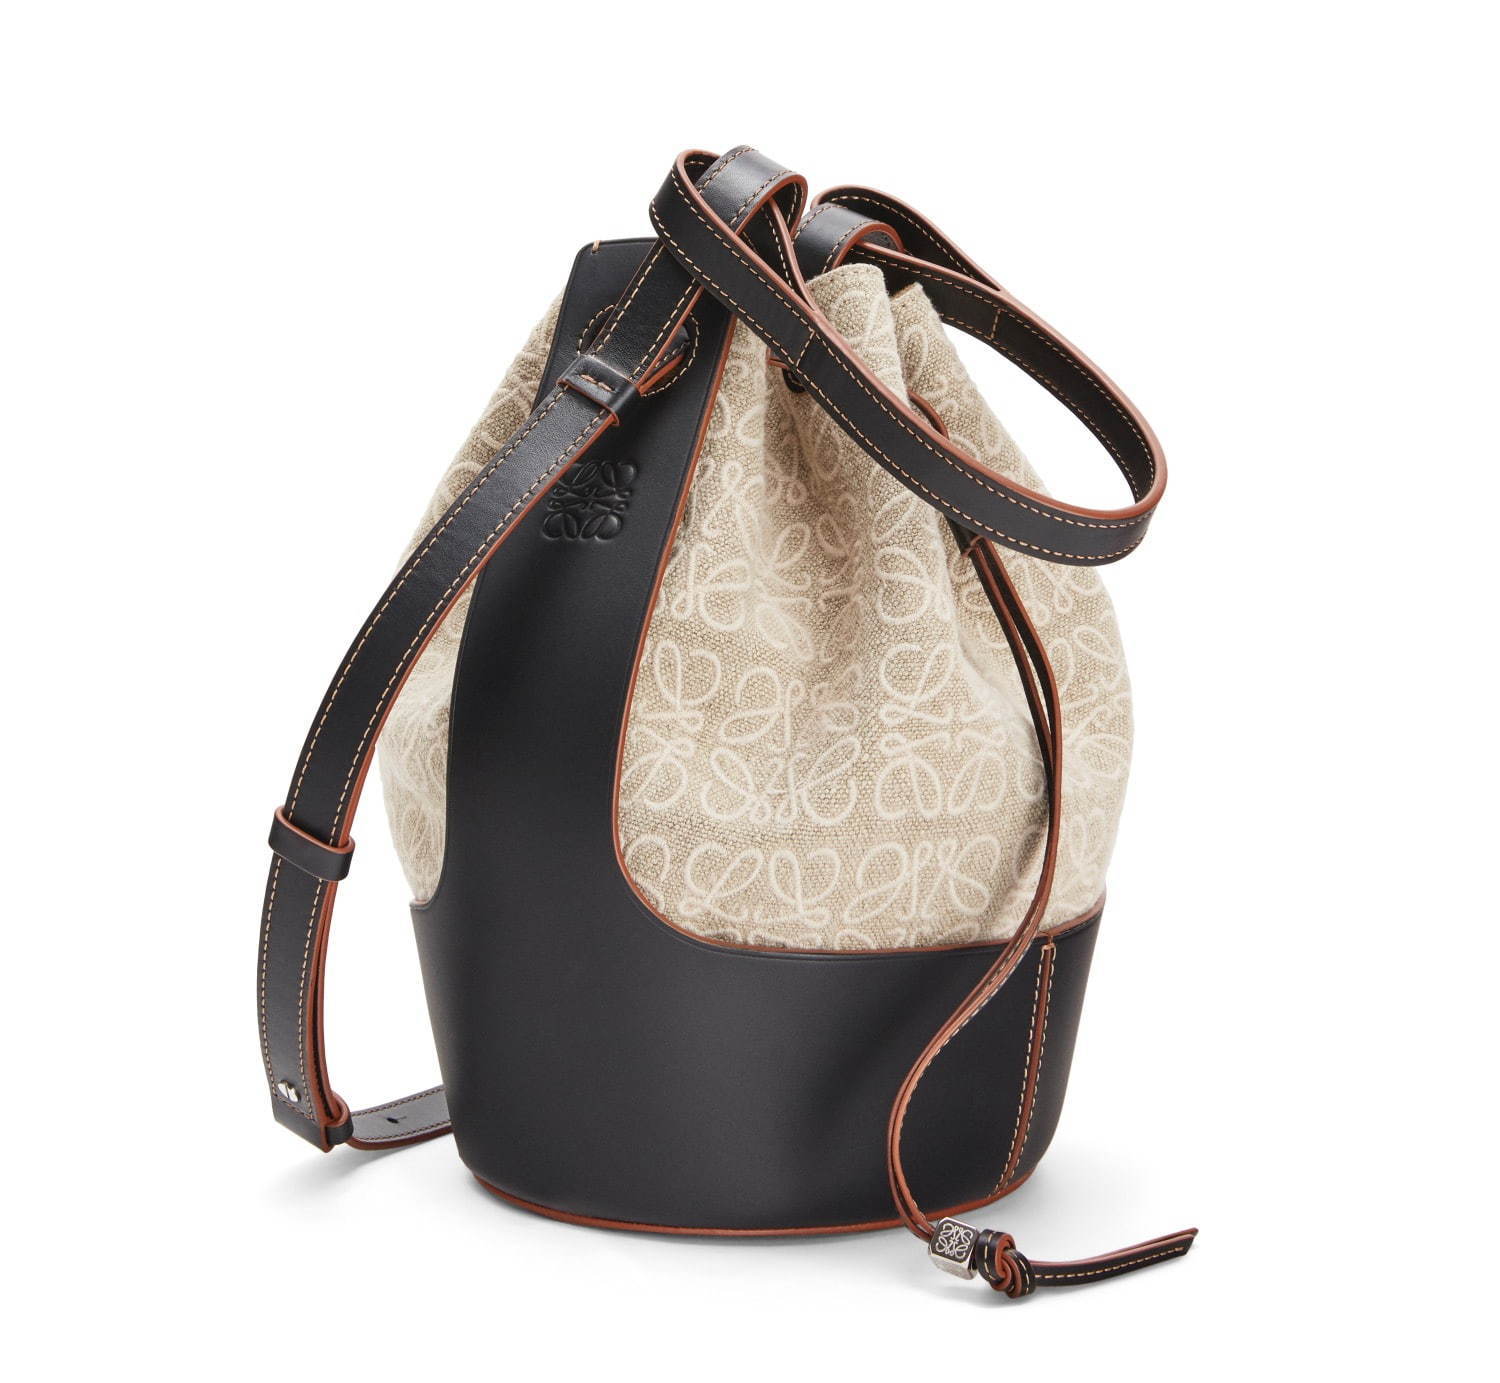 ロエベ“アナグラム・パターンの刺繍”を施した新作バッグ、風船フォルム